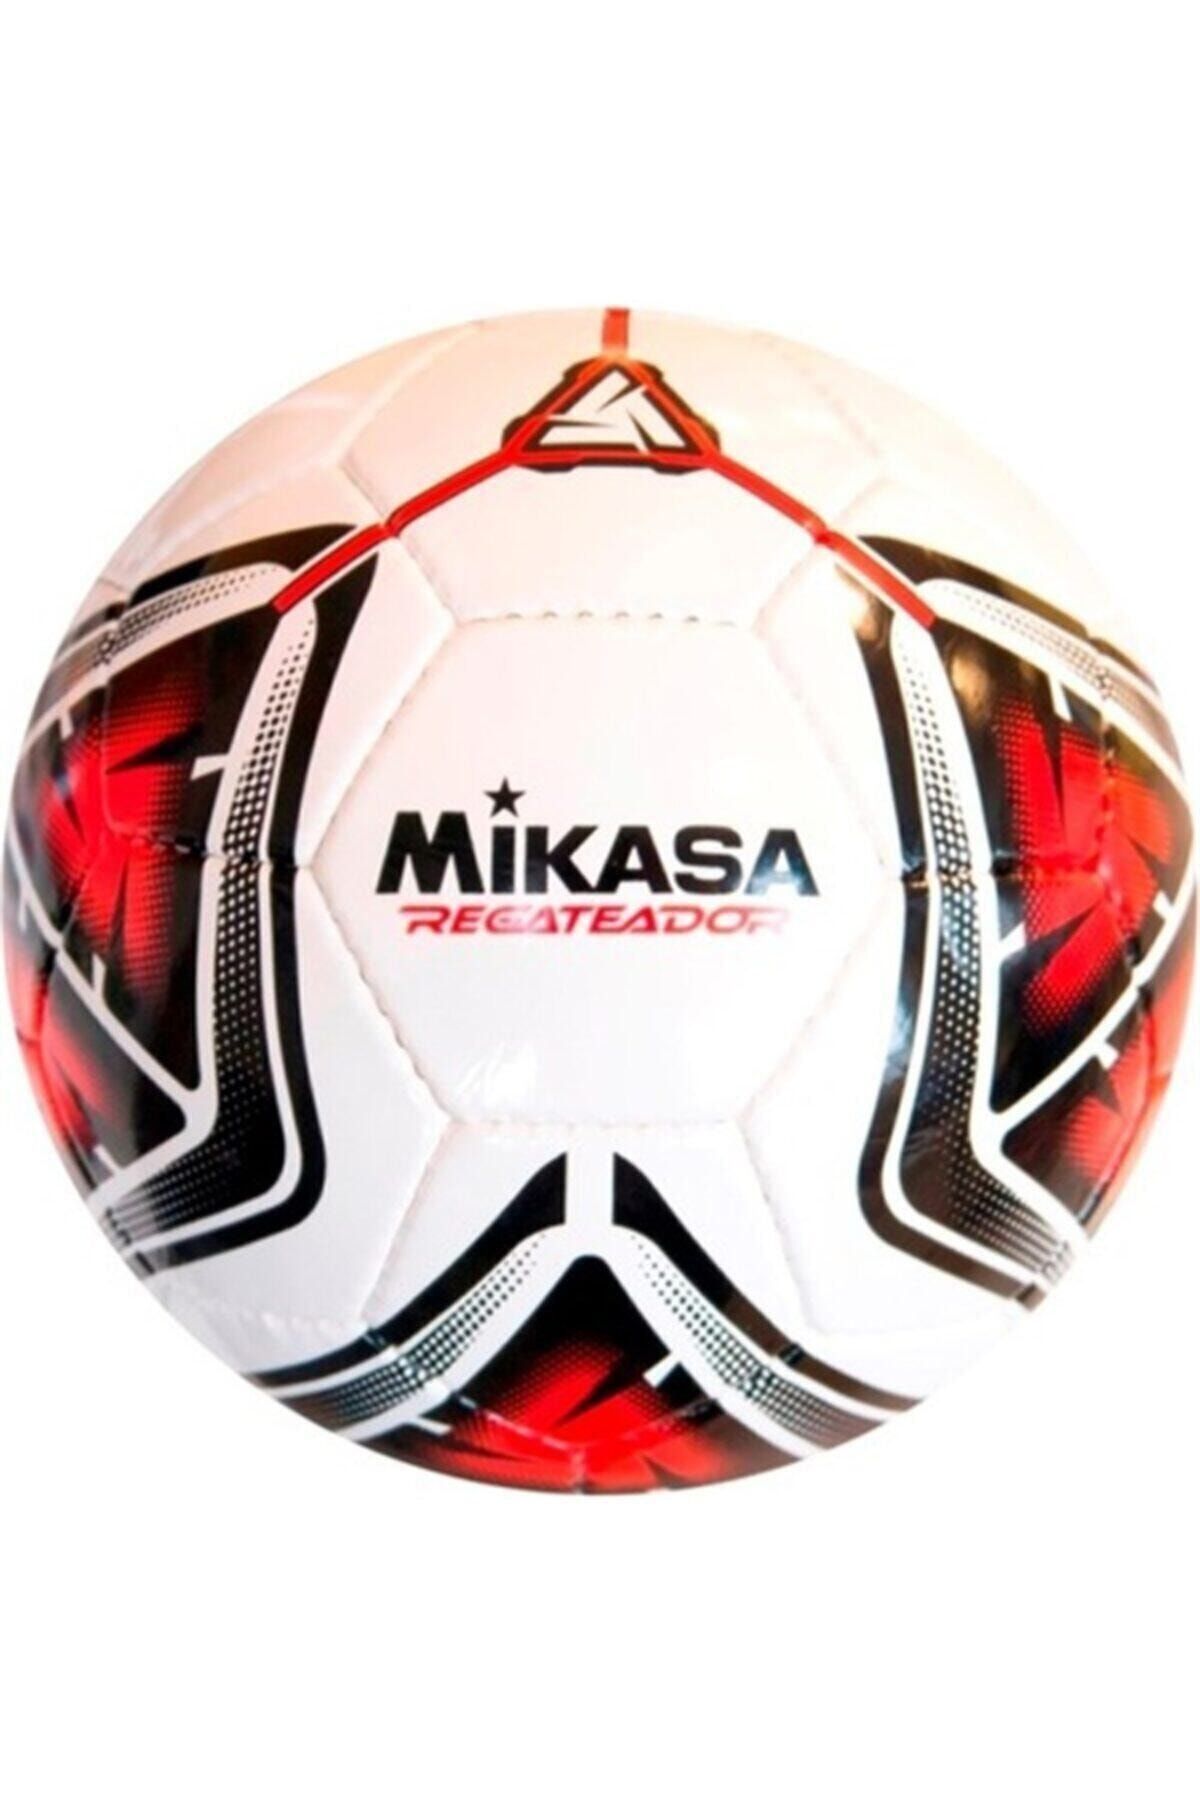 MIKASA El Dikişli Halı Saha Futbol Topu Regateador5-r Beyaz-kırmızı